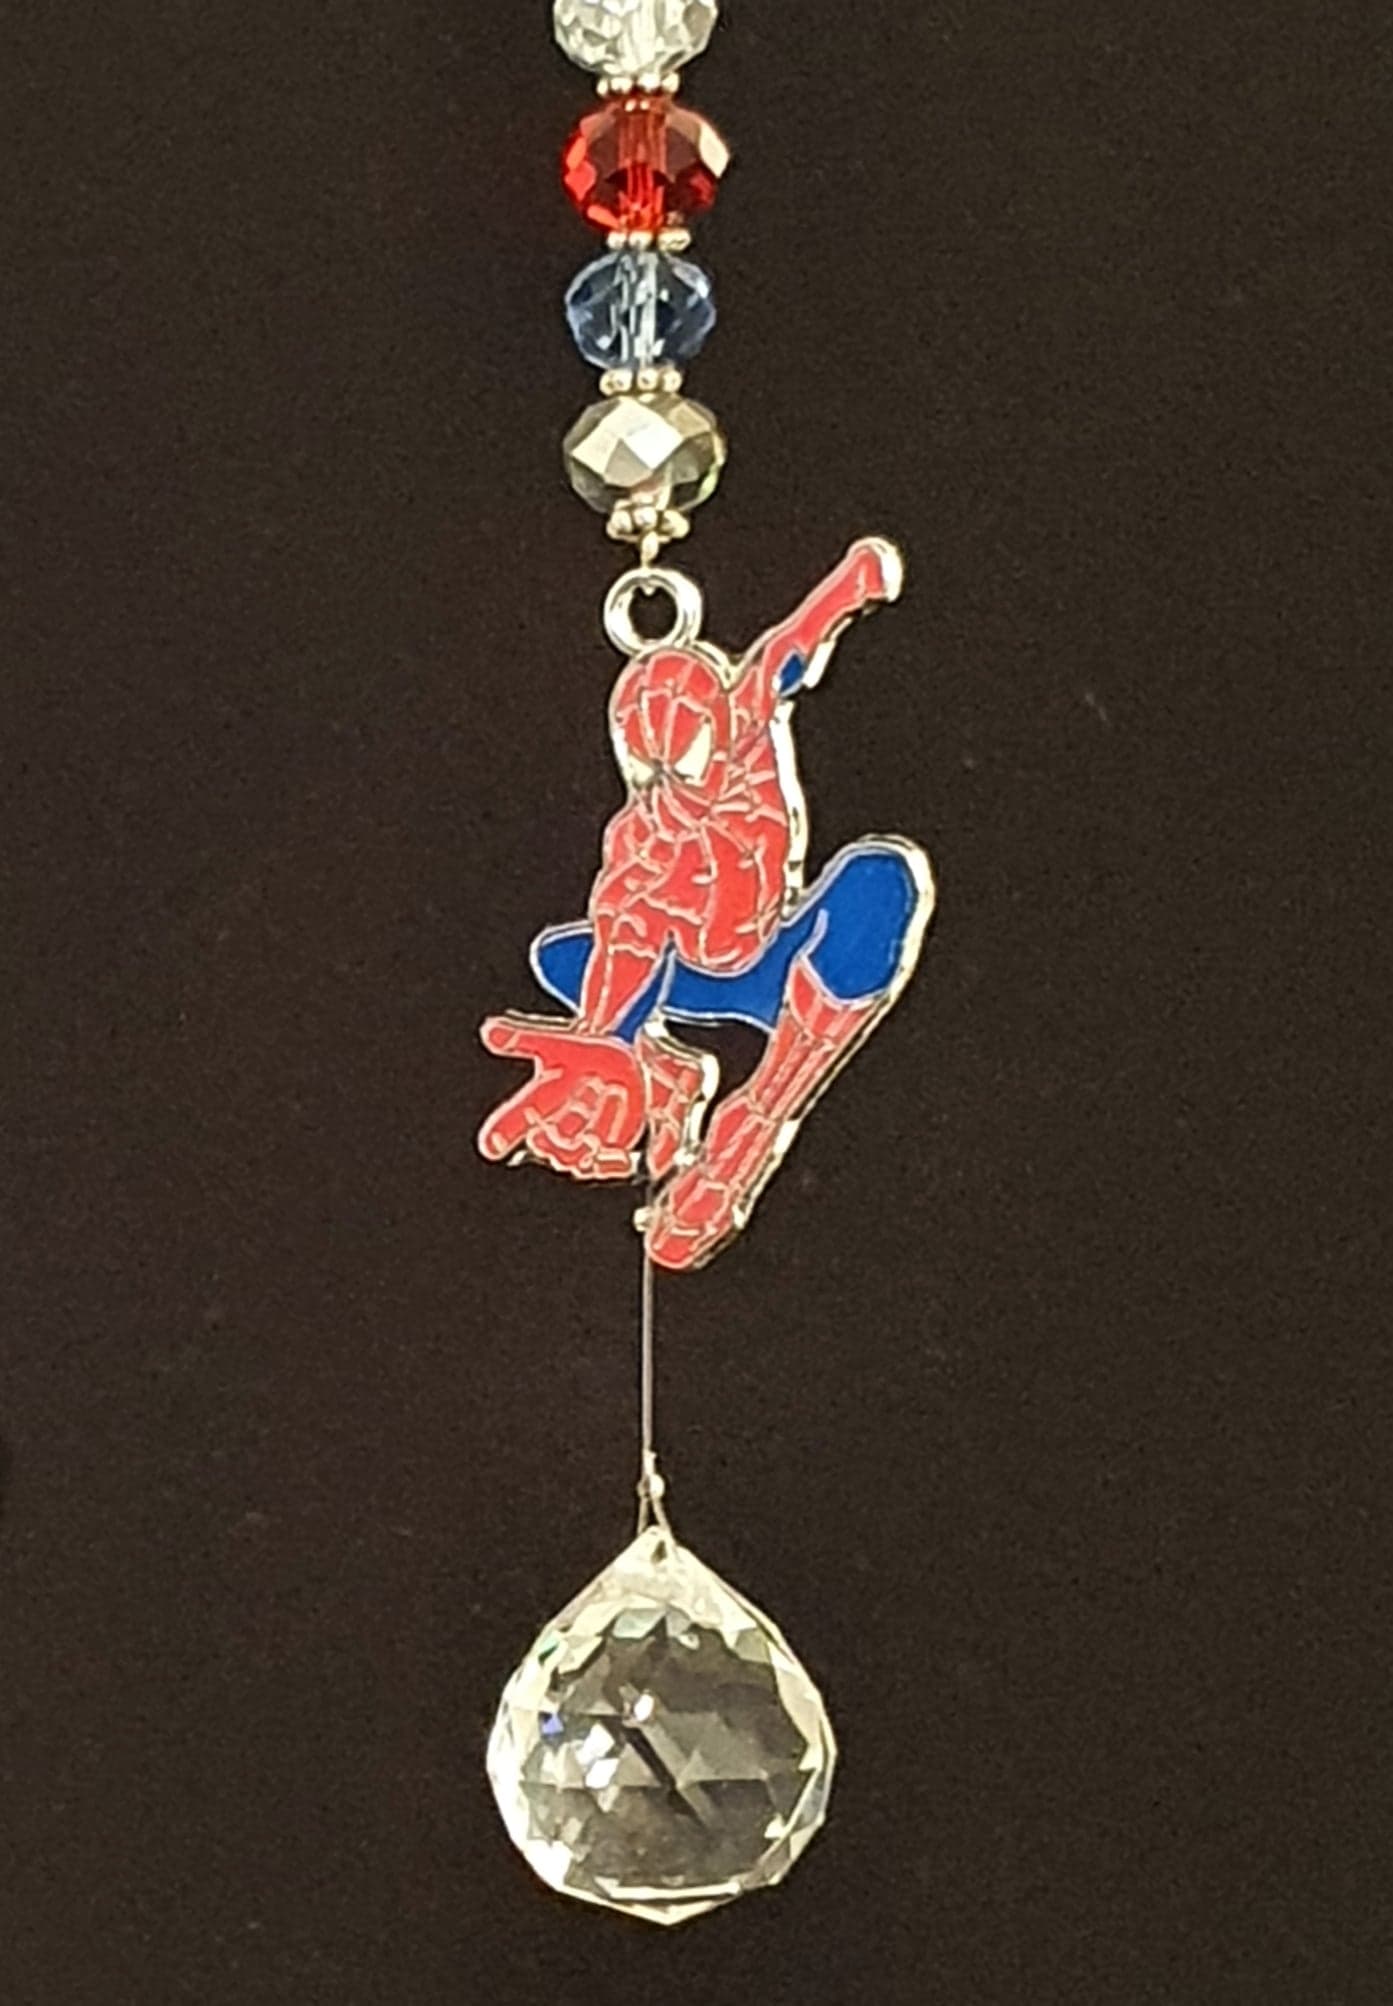 Spiderman Single Drop suncatcher